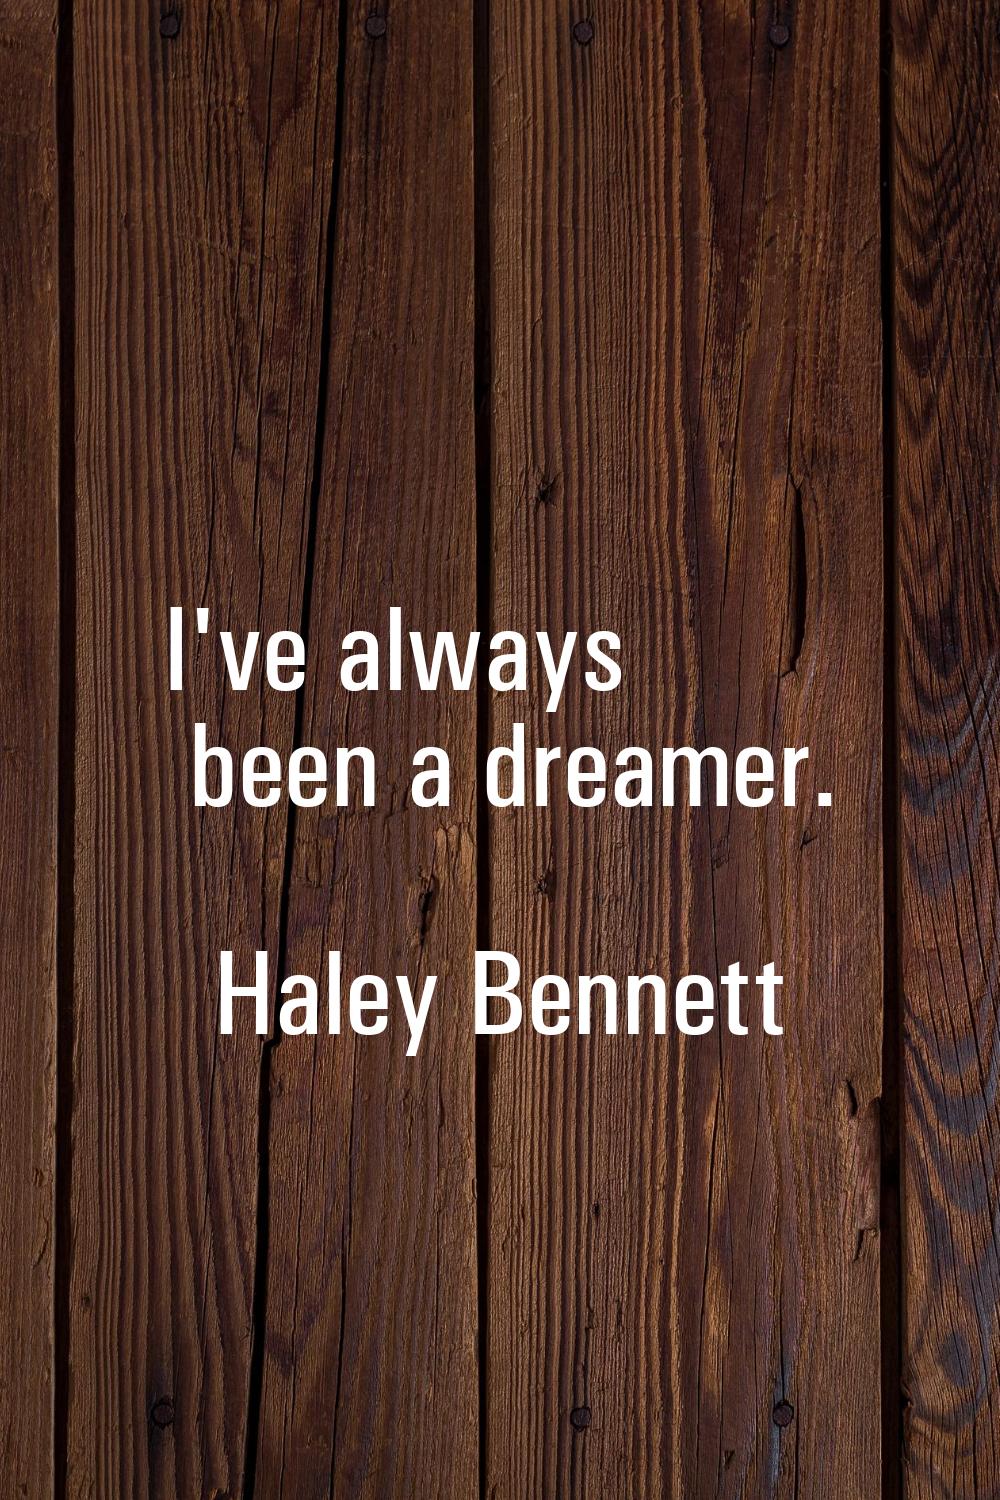 I've always been a dreamer.